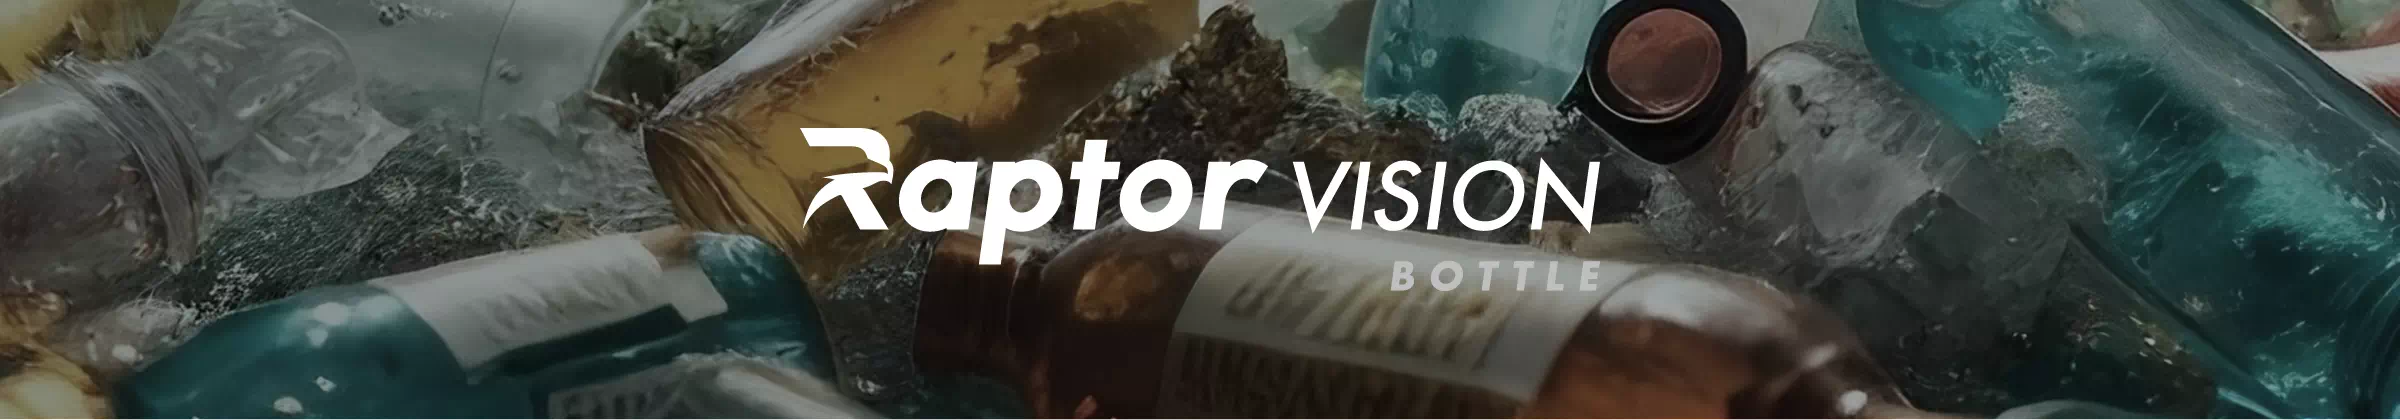 Raptor Vision BOTTLE